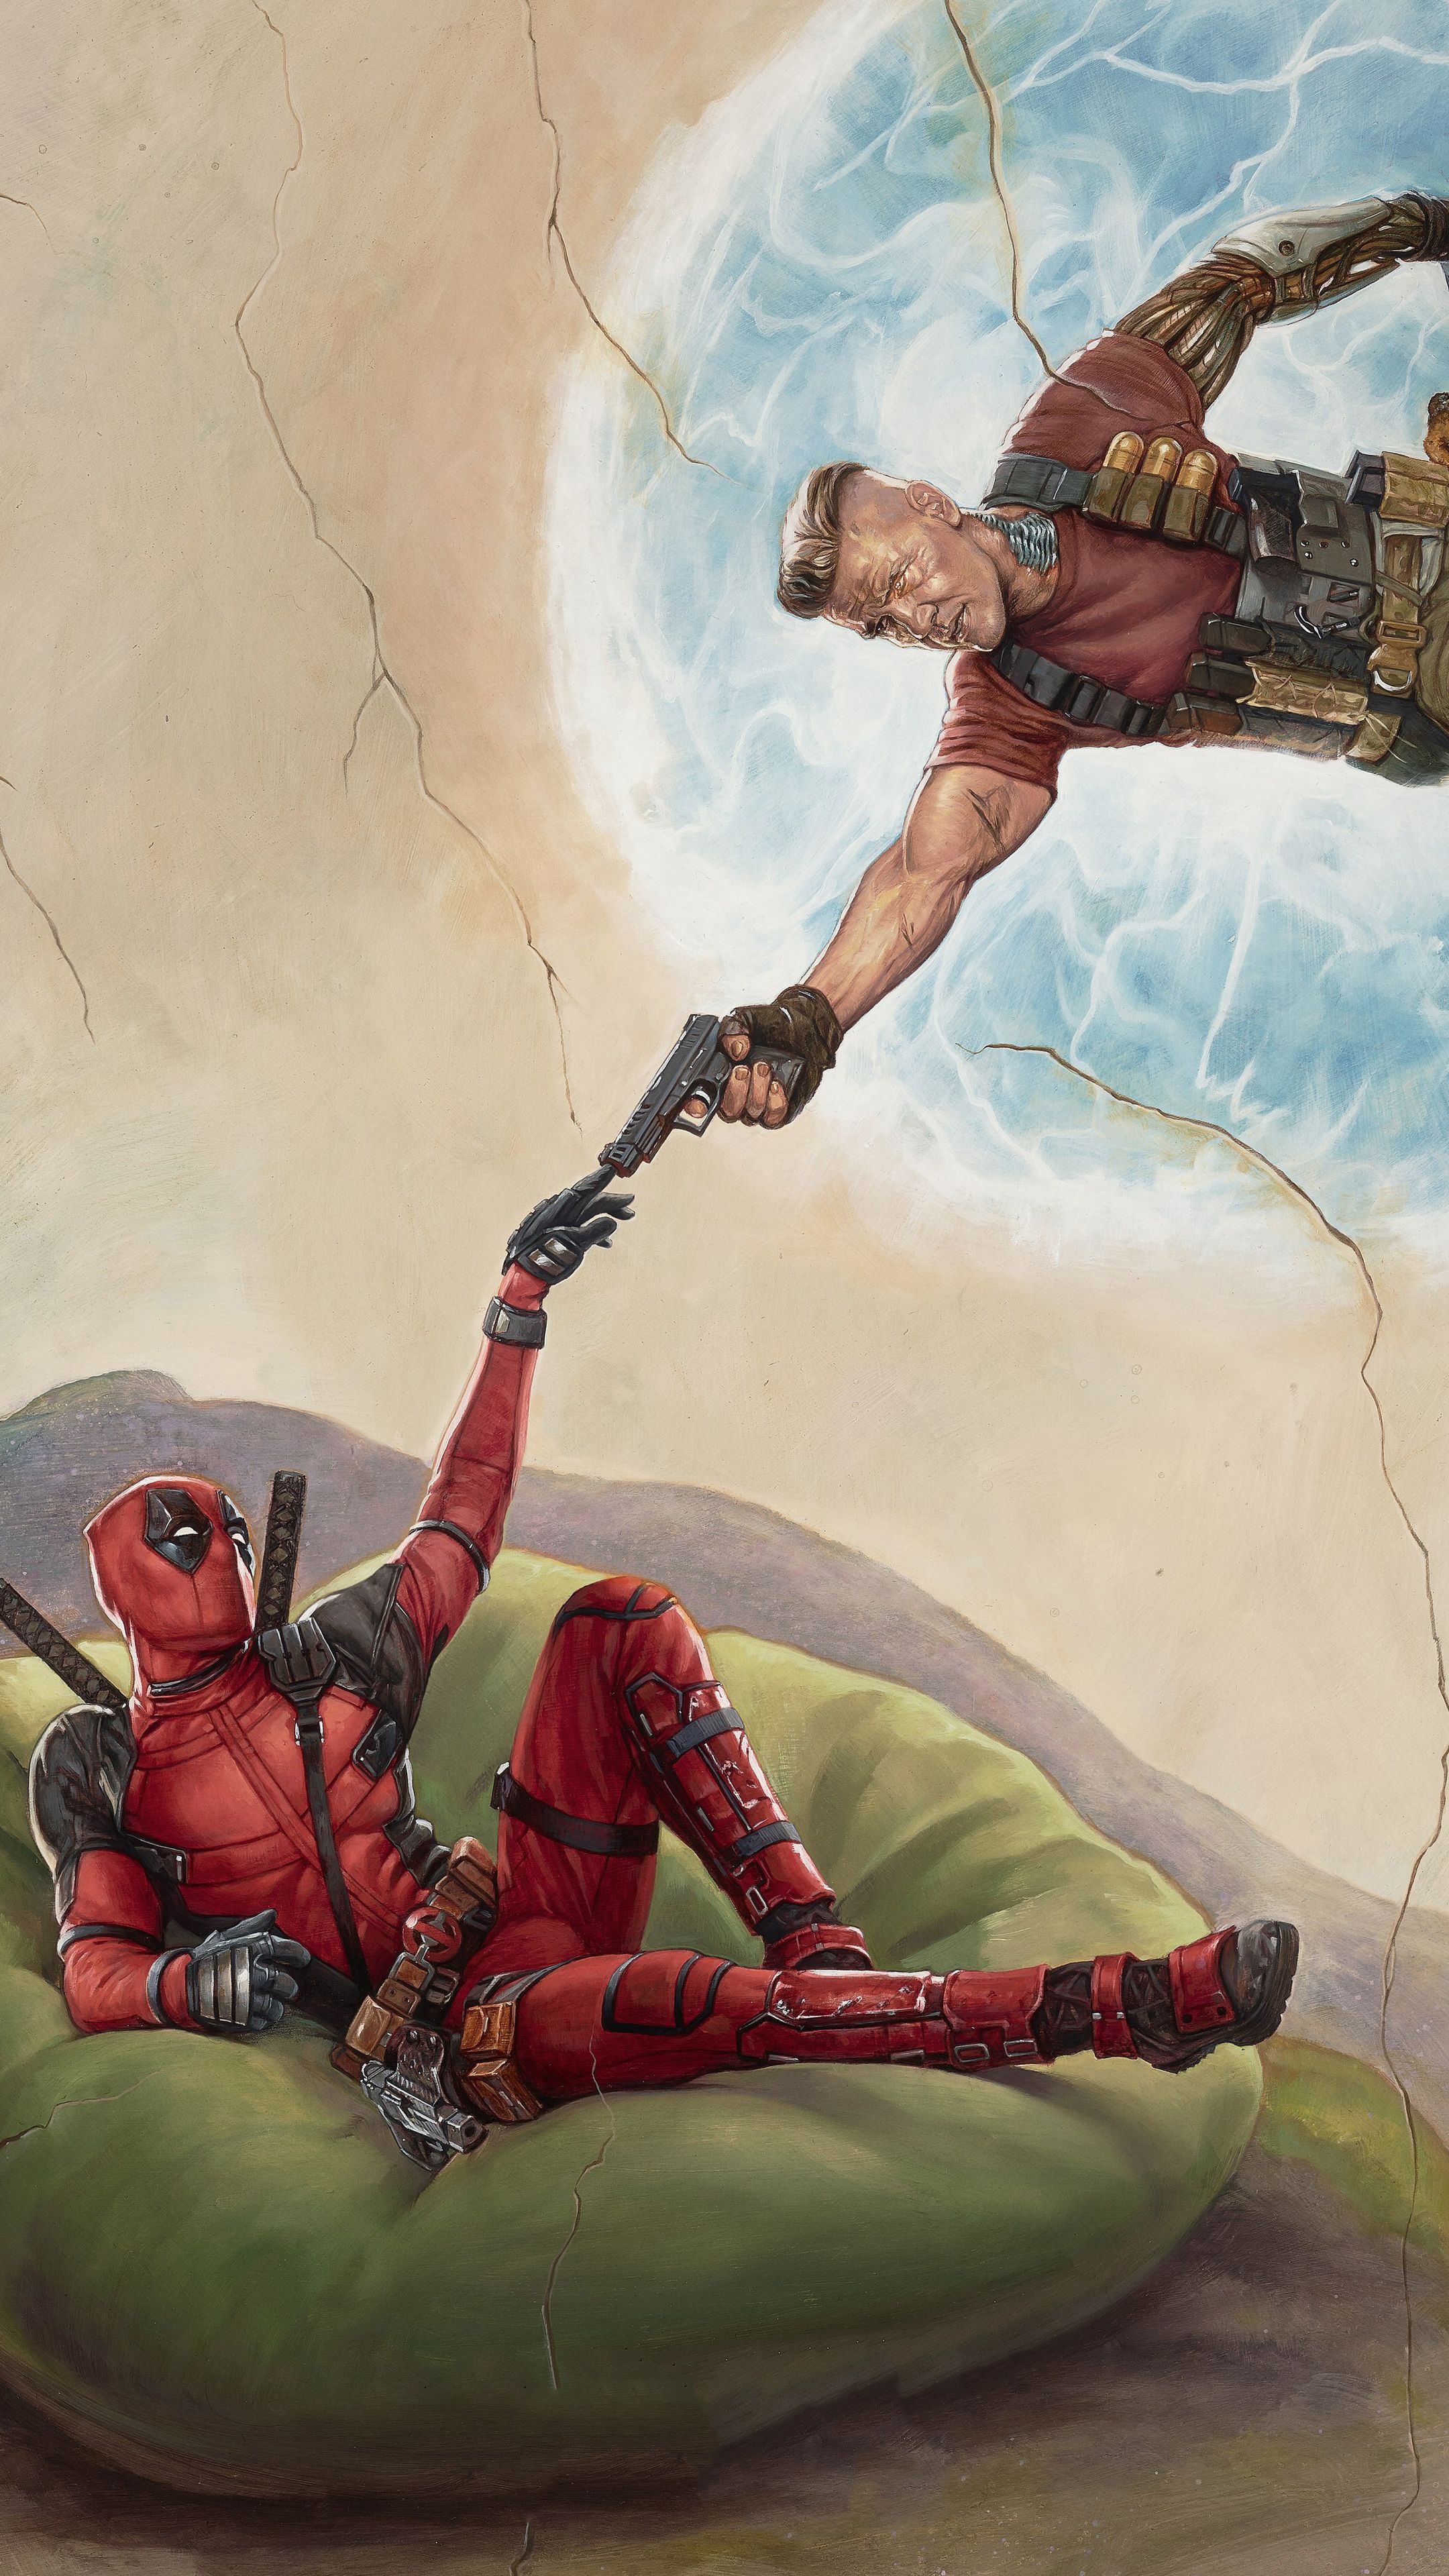 Deadpool 2 2018 Movie Poster Sony Xperia X, XZ, Z5 Premium